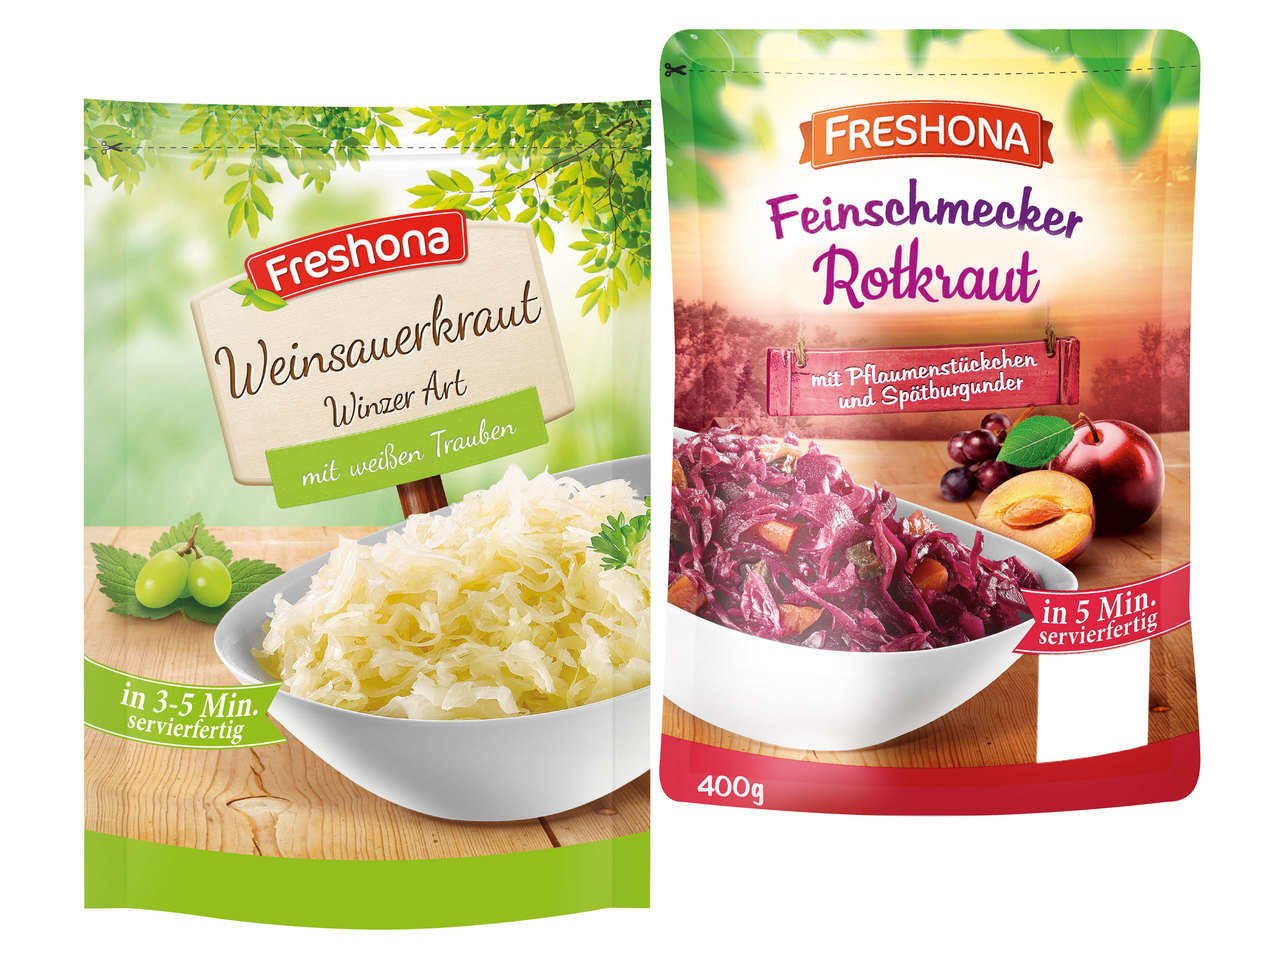 FRESHONA Sauerkraut/Rotkraut